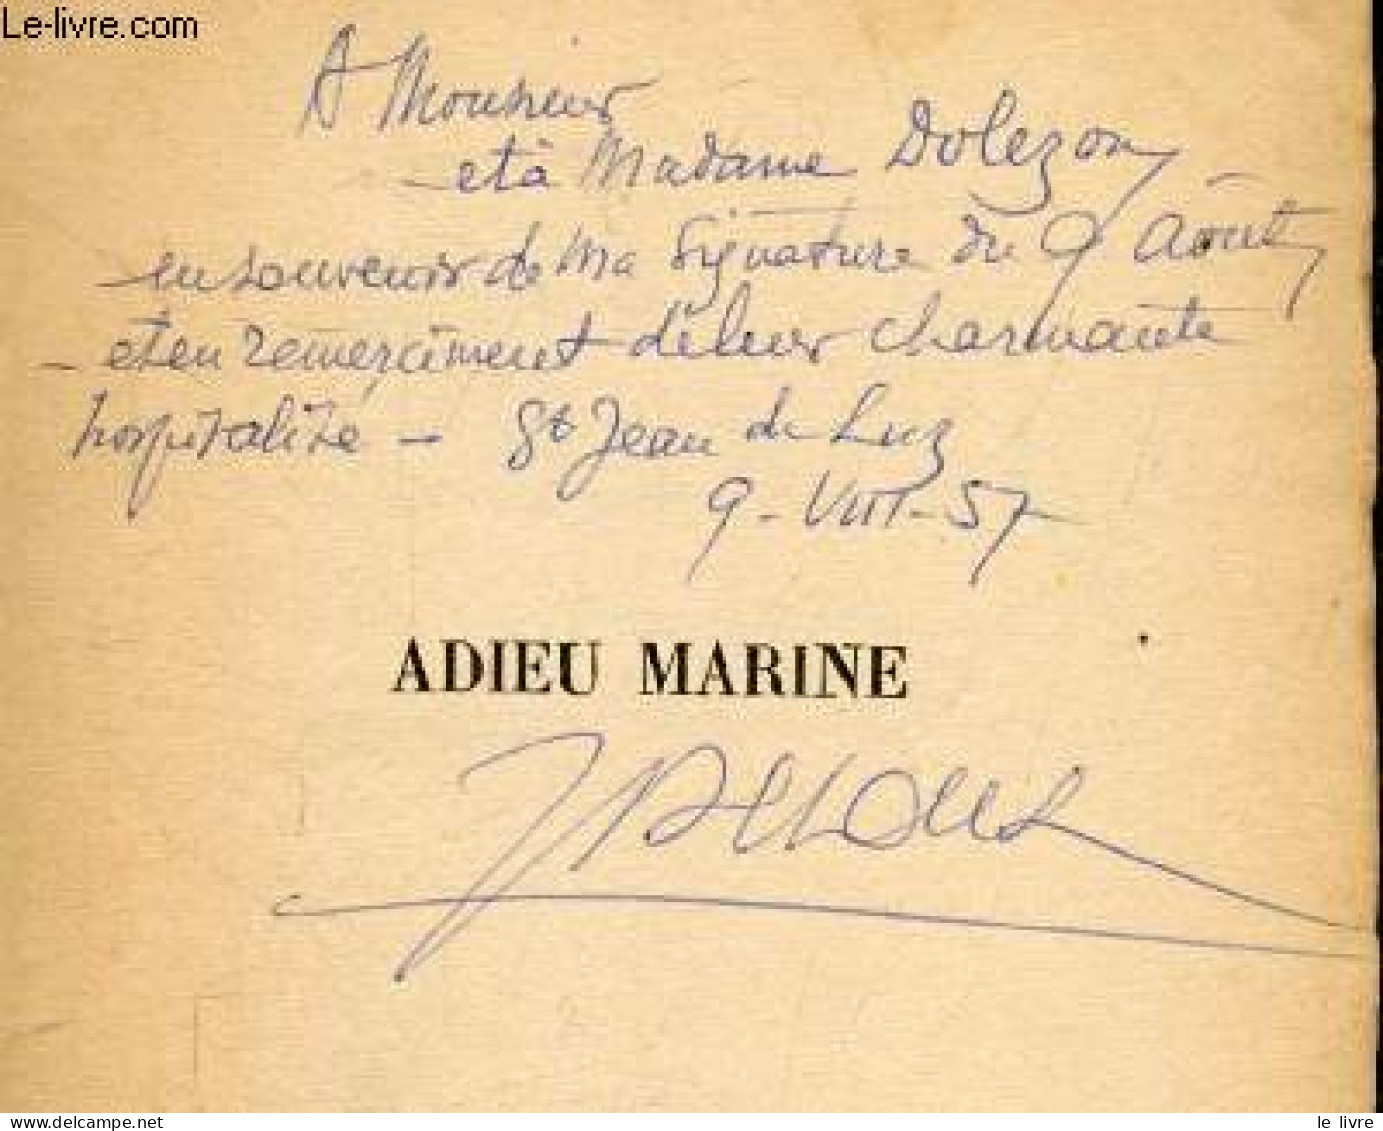 Adieu Marine + Envoi De L'auteur - DECOUX JEAN - 1957 - Livres Dédicacés